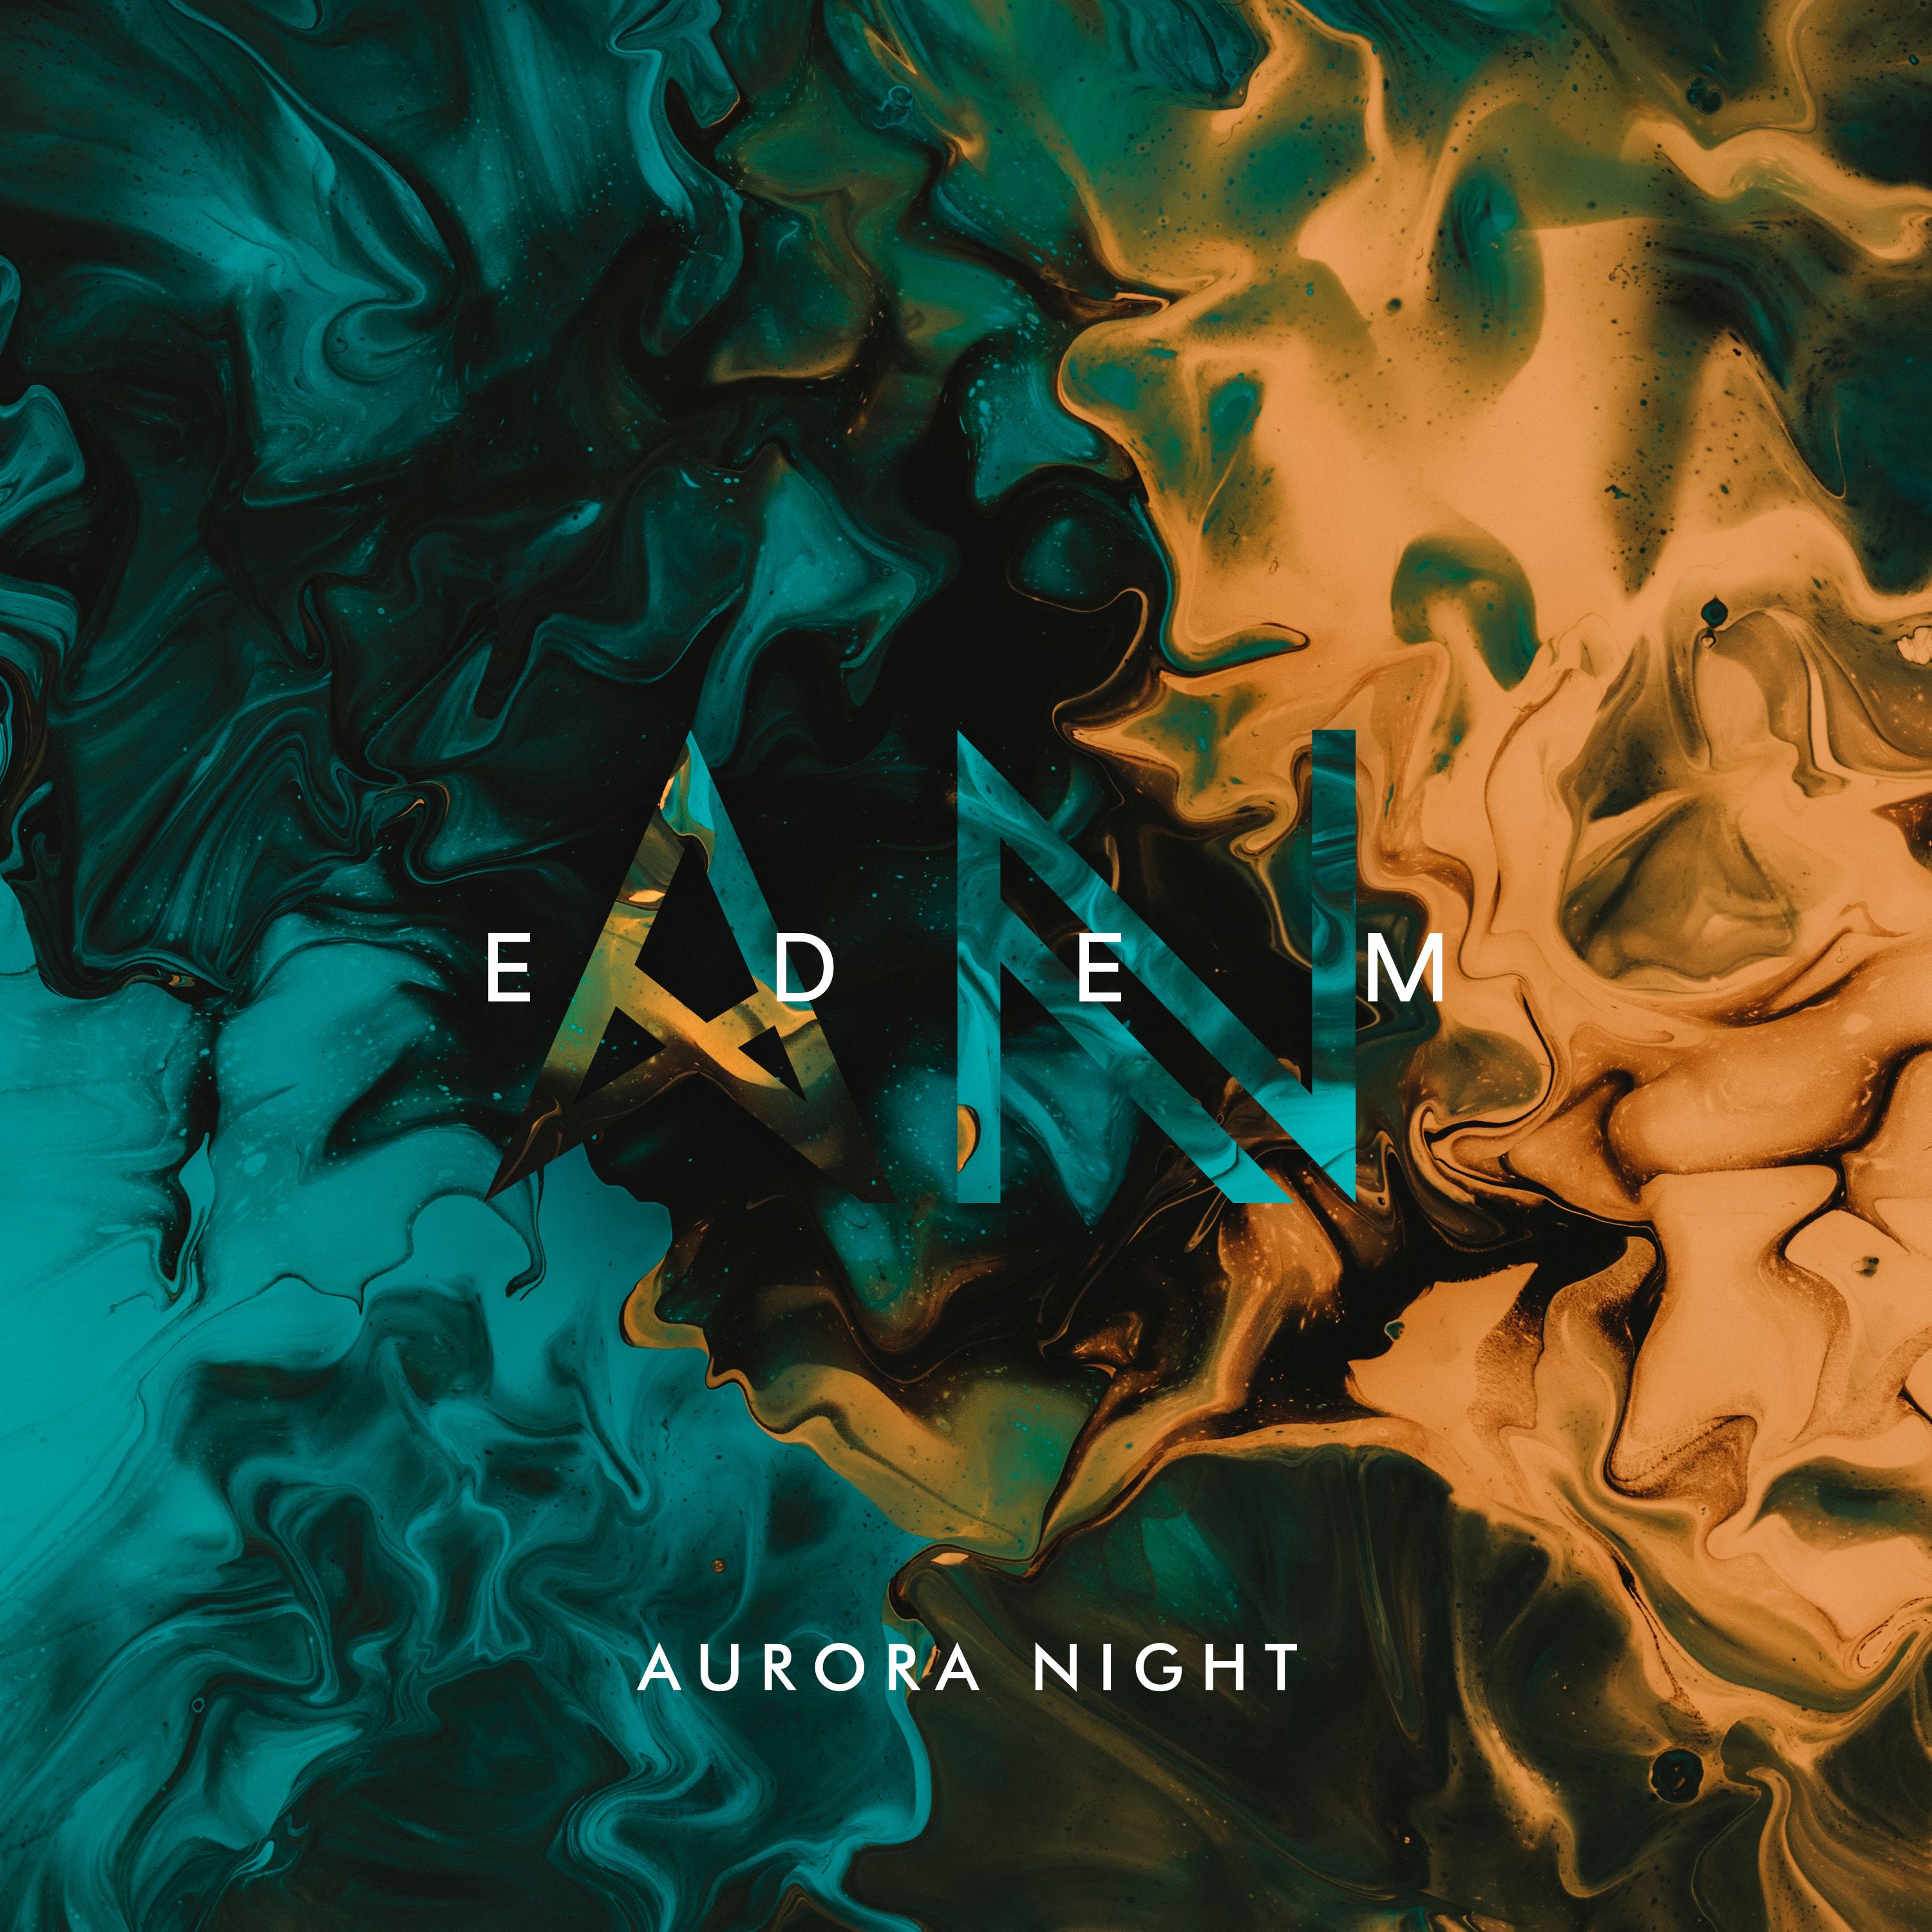 Download Aurora Night - Edem